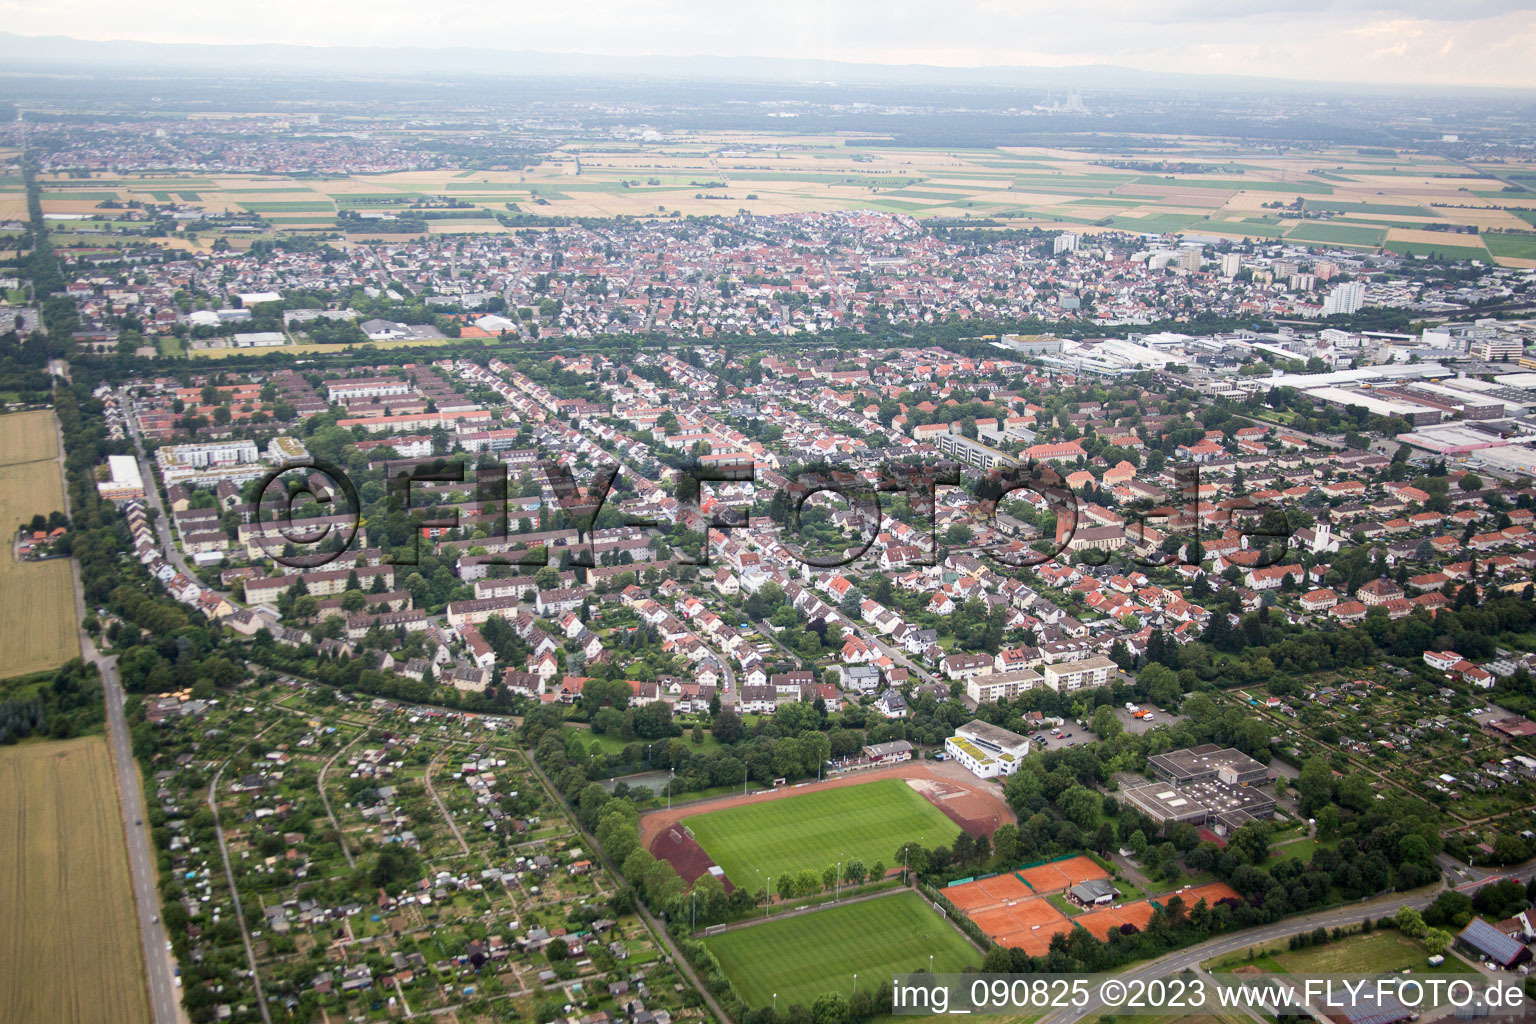 Vue aérienne de Eppelheim dans le département Bade-Wurtemberg, Allemagne